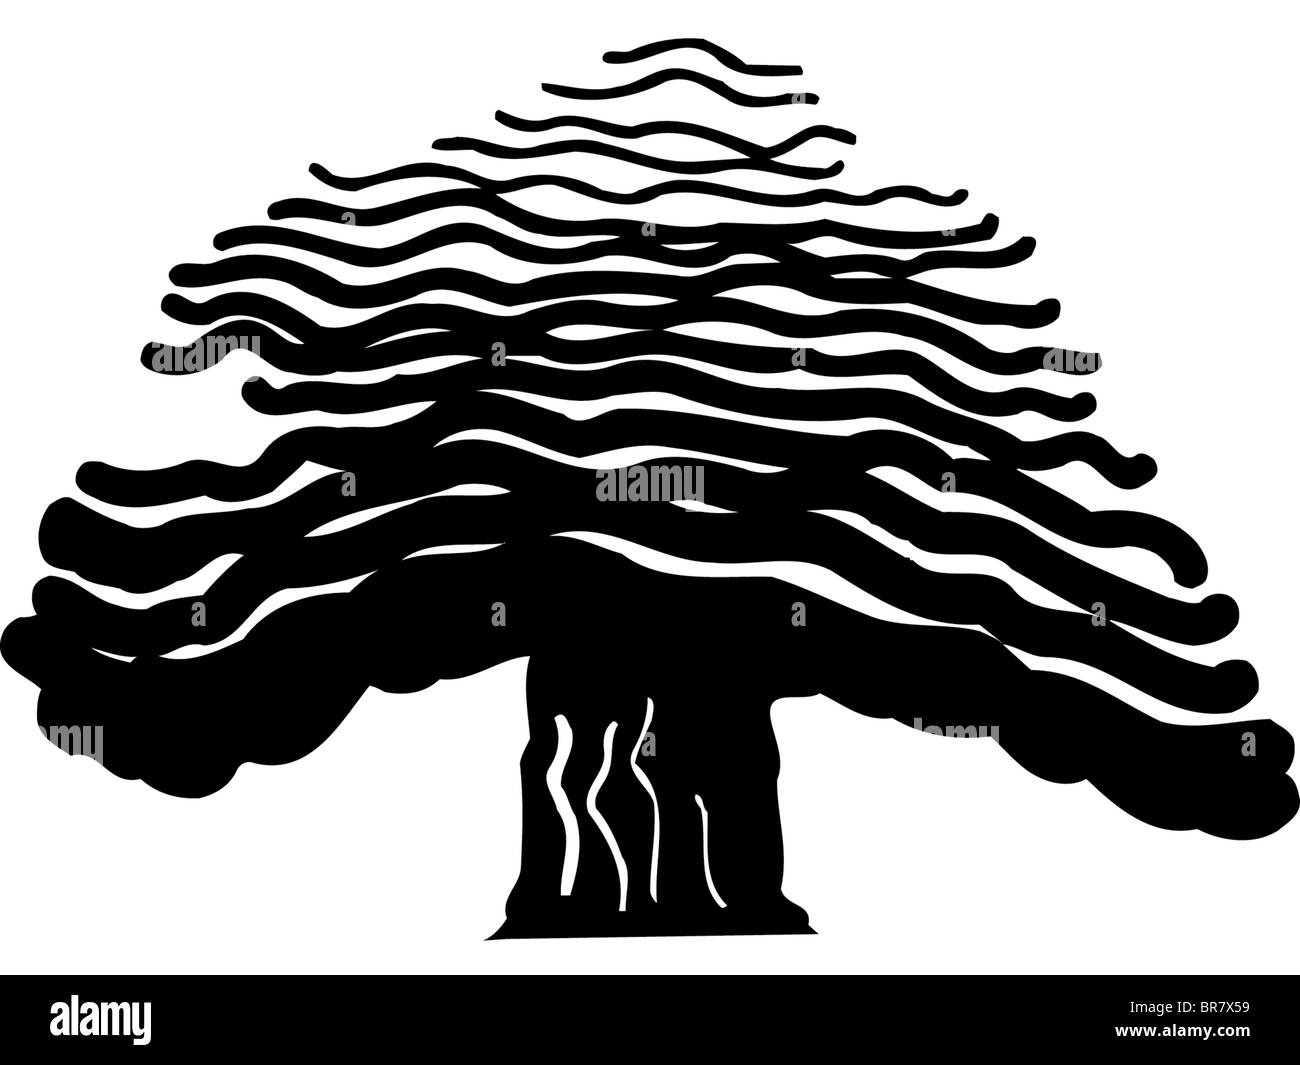 Zeichnung eines kühnen Baumes Stockfoto